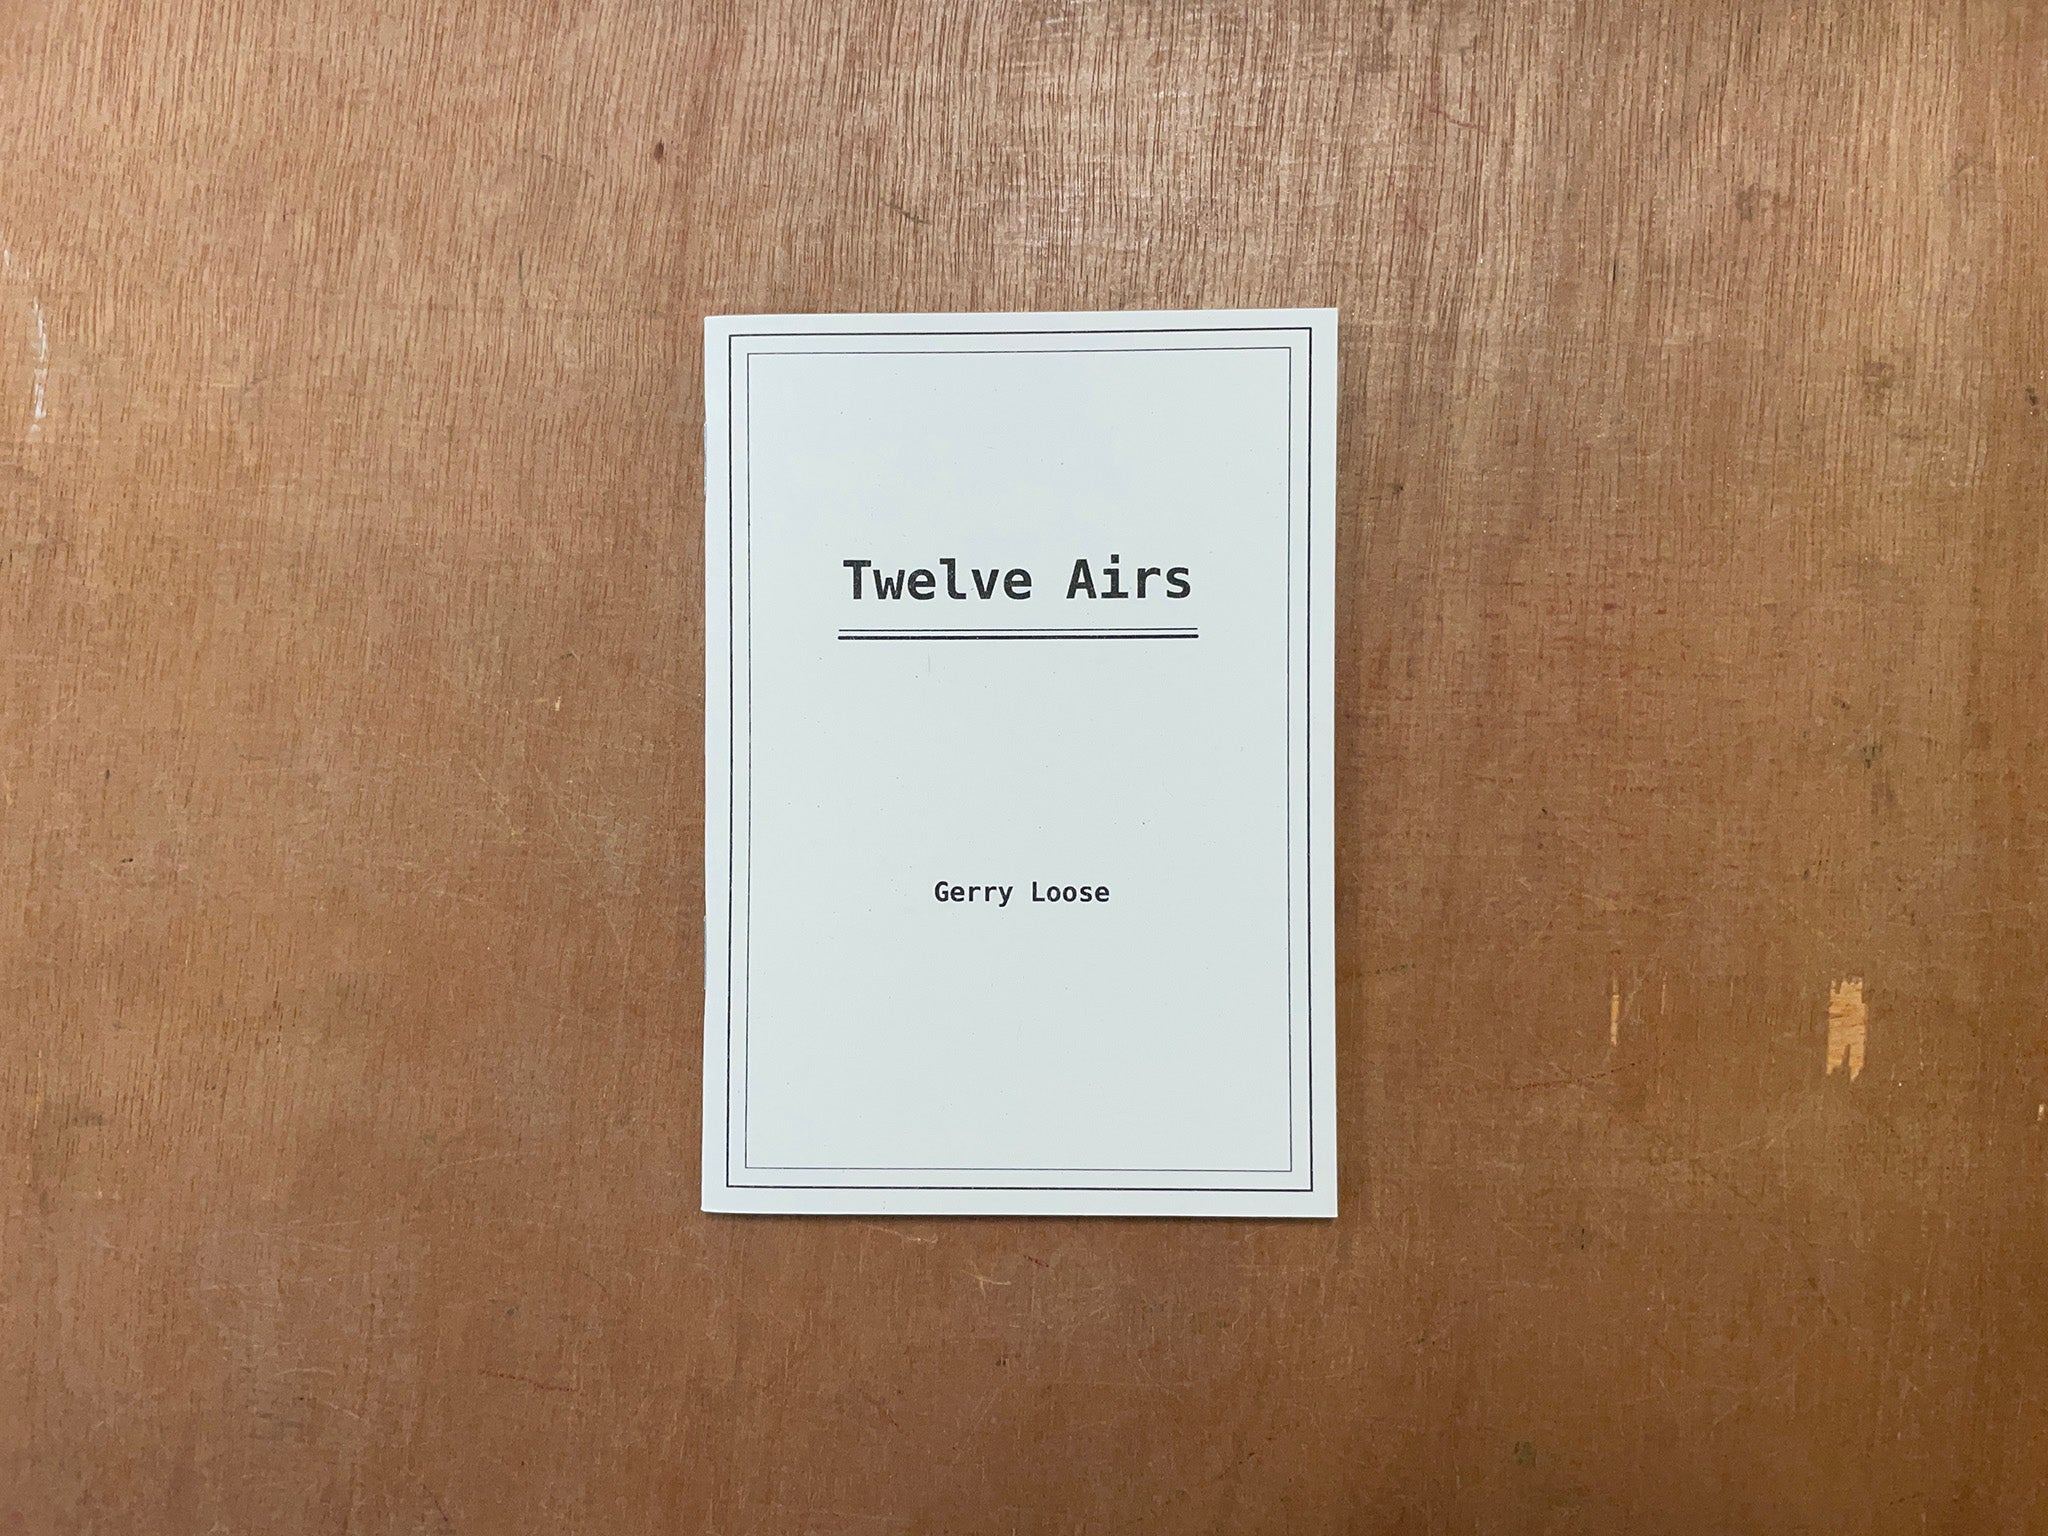 TWELVE AIRS by Gerry Loose